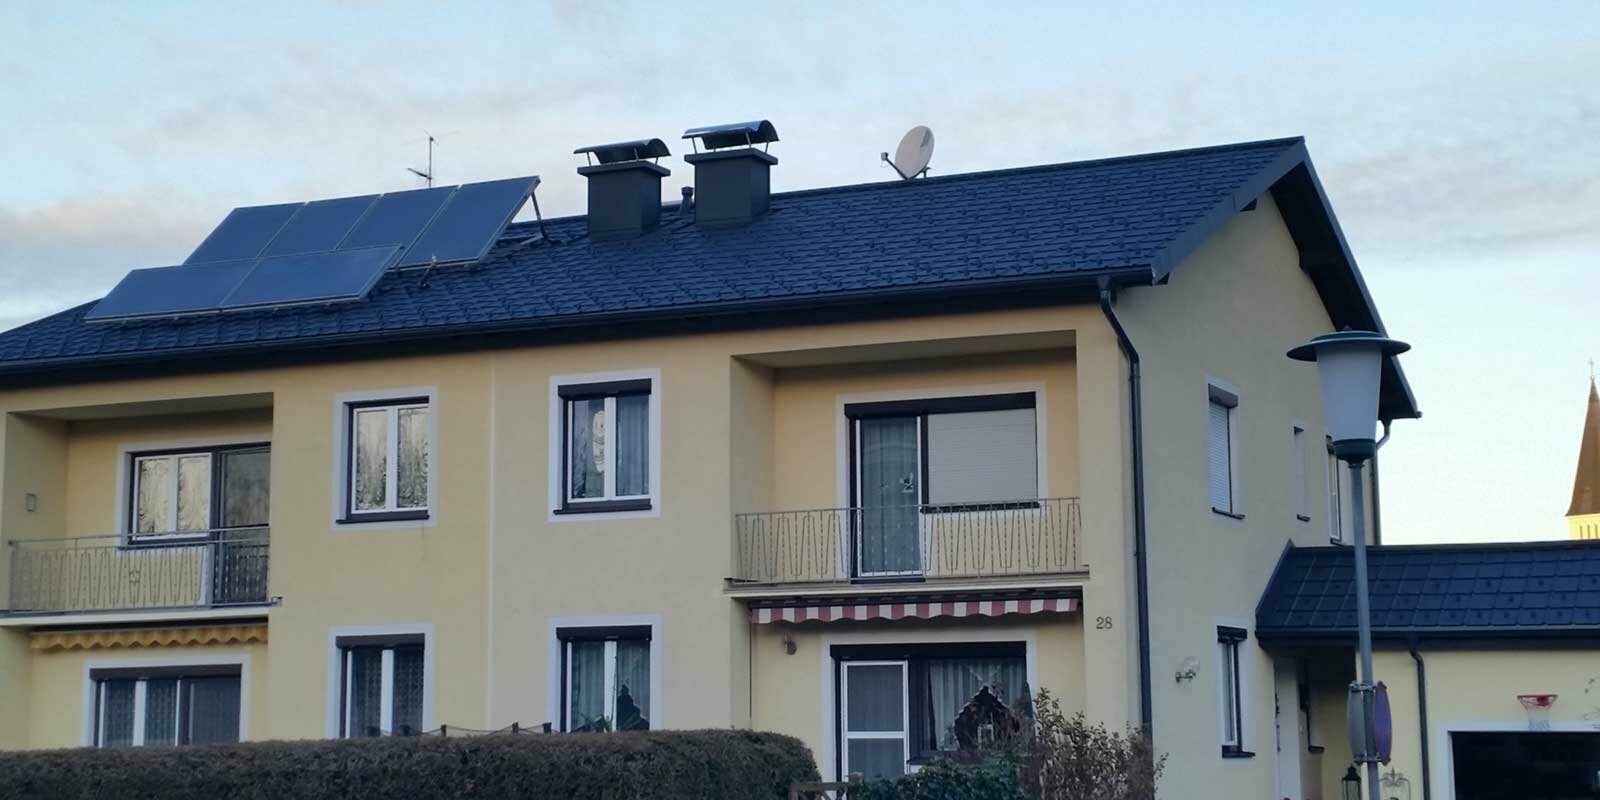 Maison après la rénovation de toiture à l’aide de Prefalz et de tuiles PREFA, en Autriche